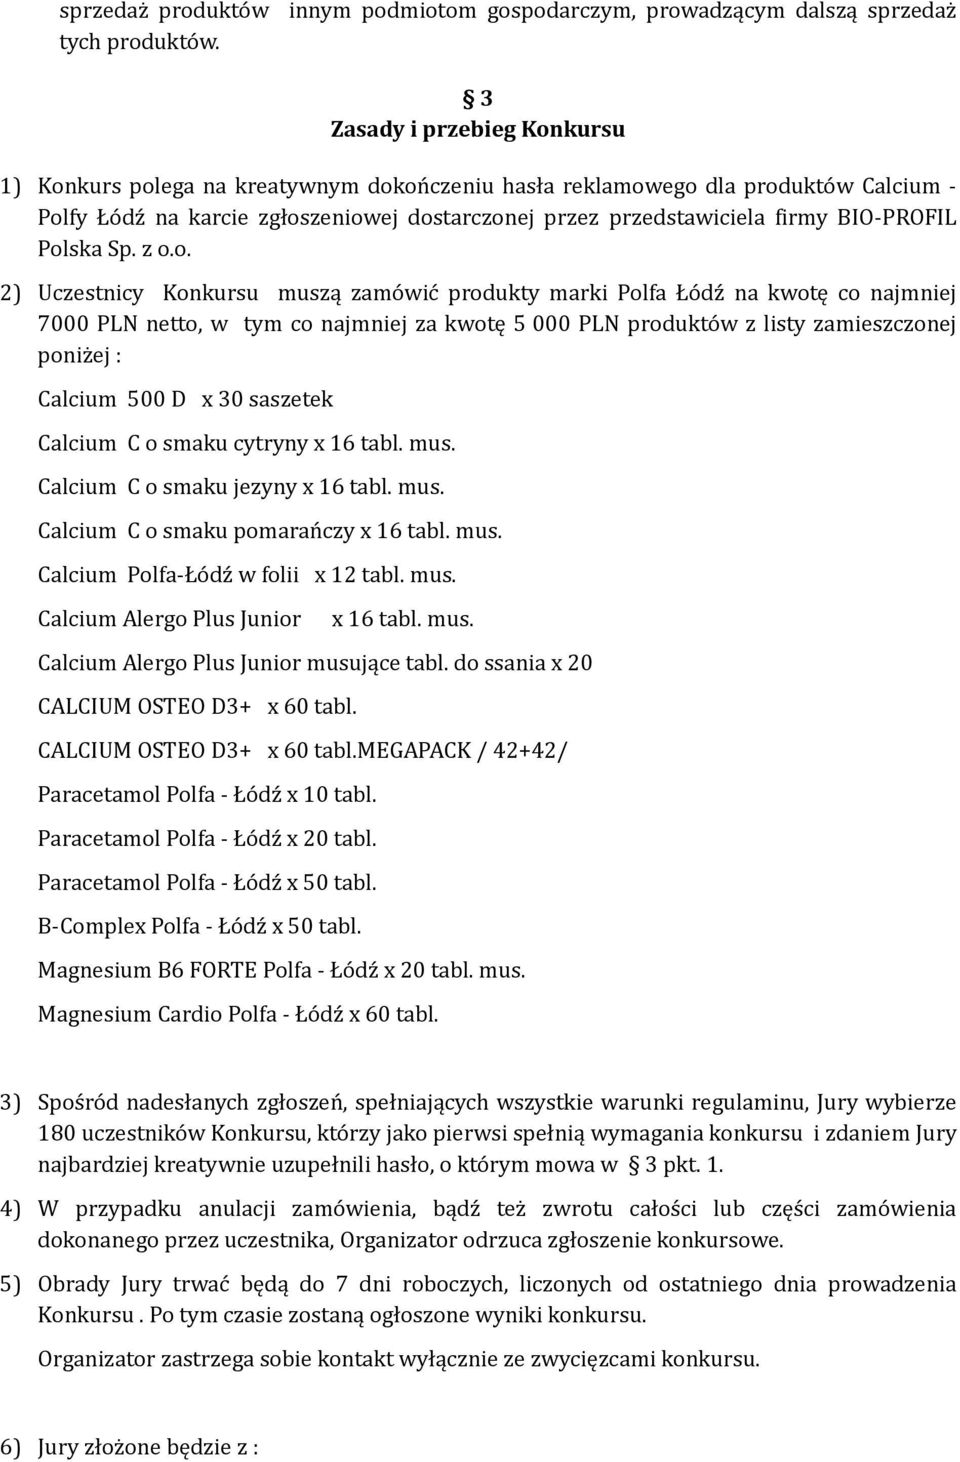 BIO-PROFIL 2) Uczestnicy Konkursu muszą zamówić produkty marki Polfa Łódź na kwotę co najmniej 7000 PLN netto, w tym co najmniej za kwotę 5 000 PLN produktów z listy zamieszczonej poniżej : Calcium